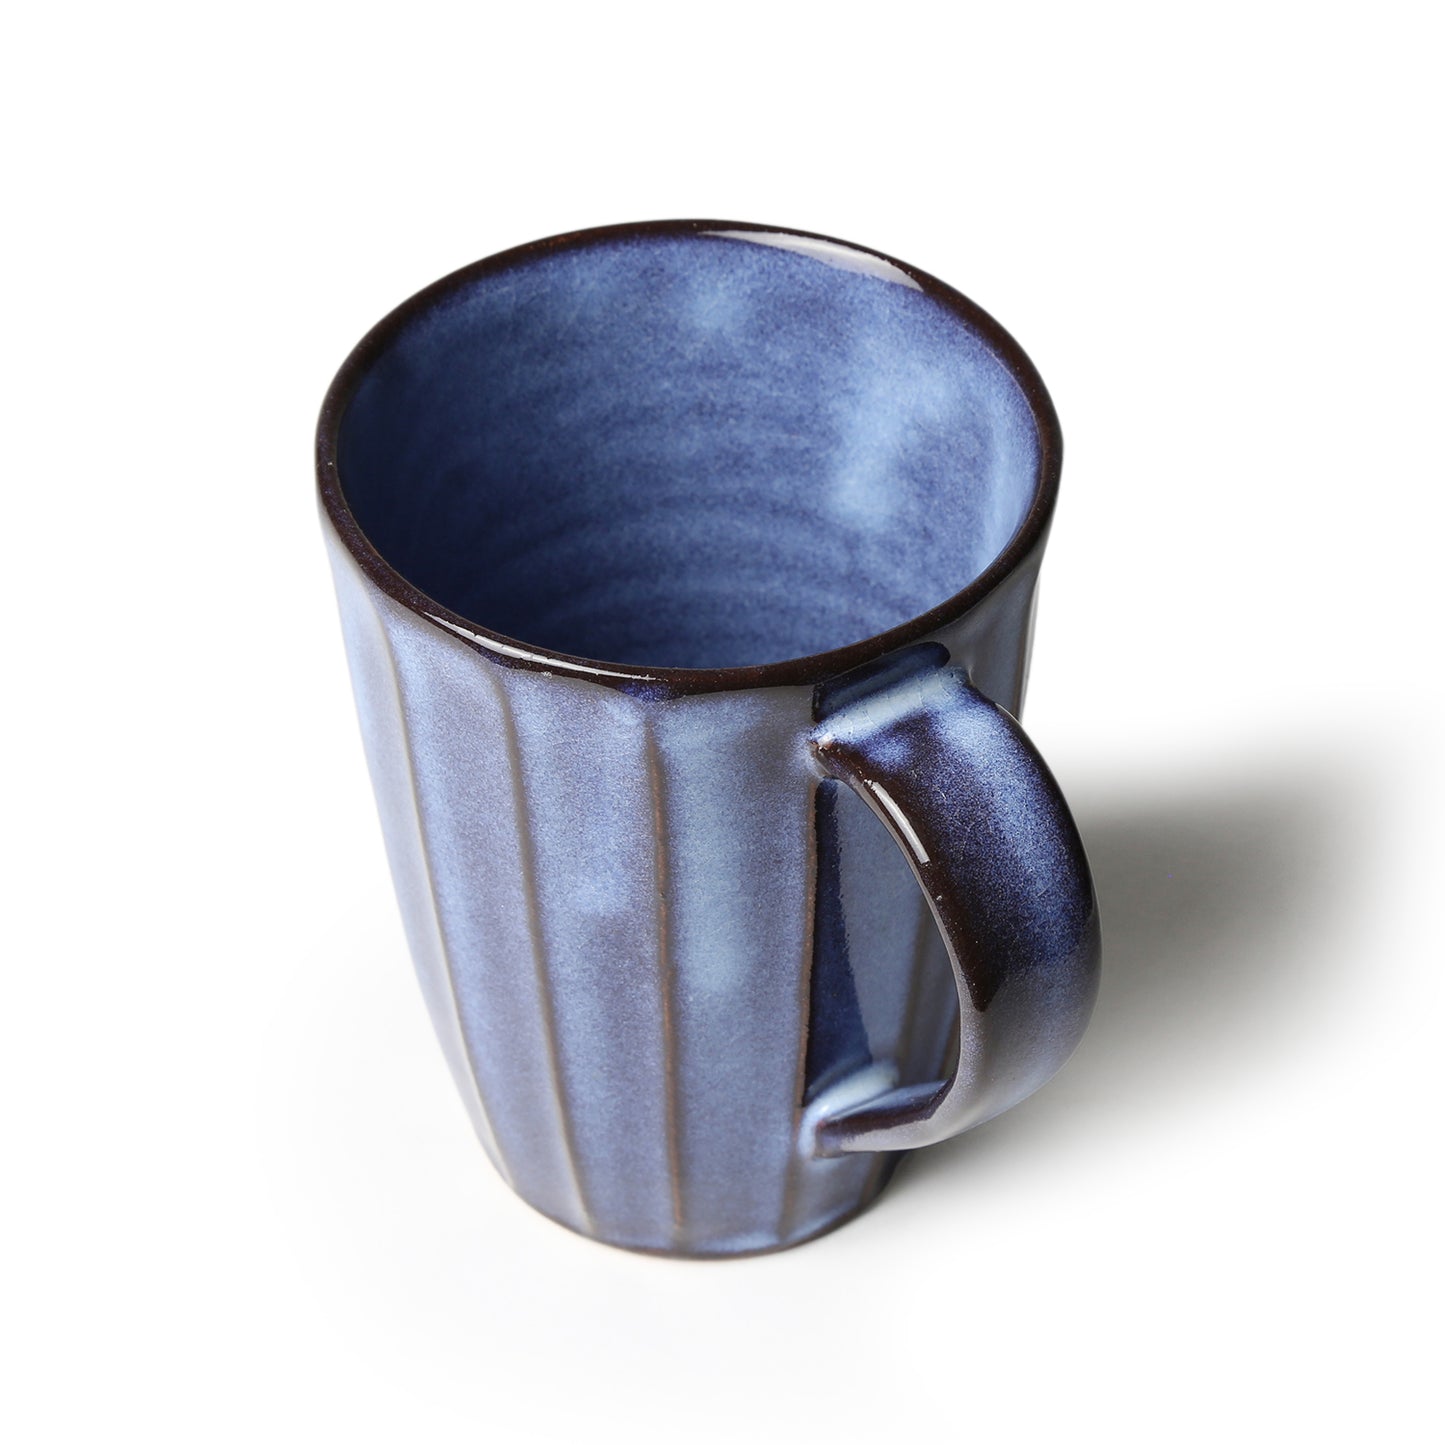 Shokozan Hagiyaki Blue Mug